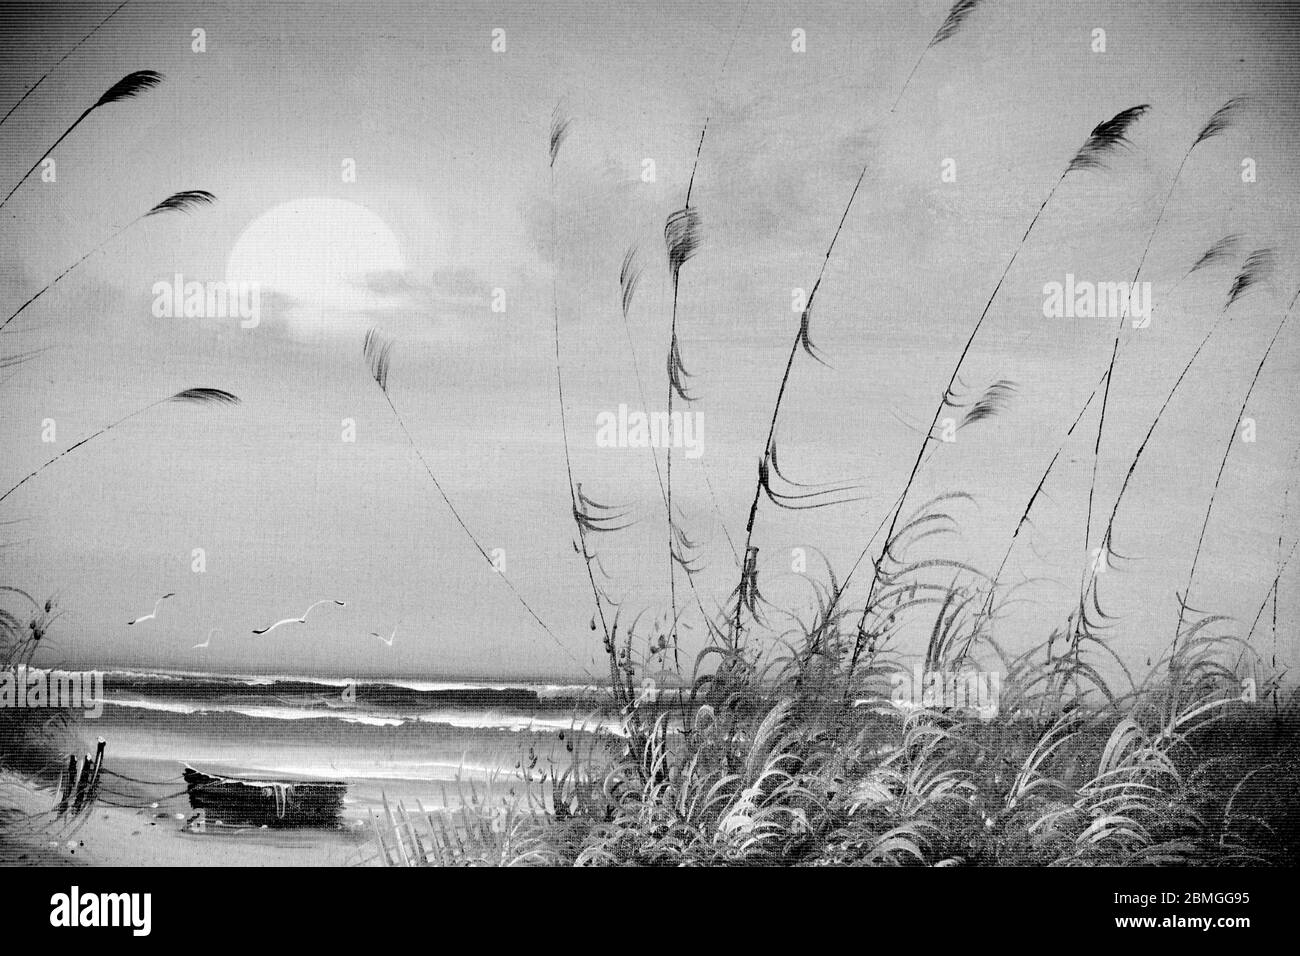 Une magnifique photo en noir et blanc d'un bateau sur une plage avec des vagues de mer et le coucher de soleil dans un ciel nuageux utilisé comme illustration papier peint résumé Banque D'Images